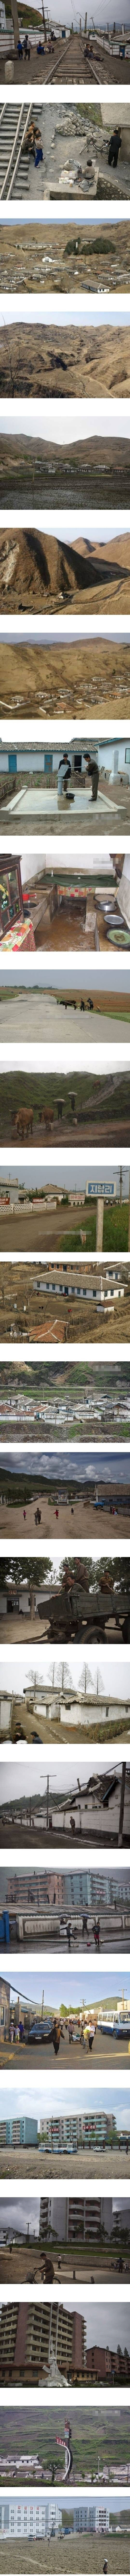 맨날 서울 불바다 타령하는 북한의 흔한 시골풍경.jpg | 인스티즈